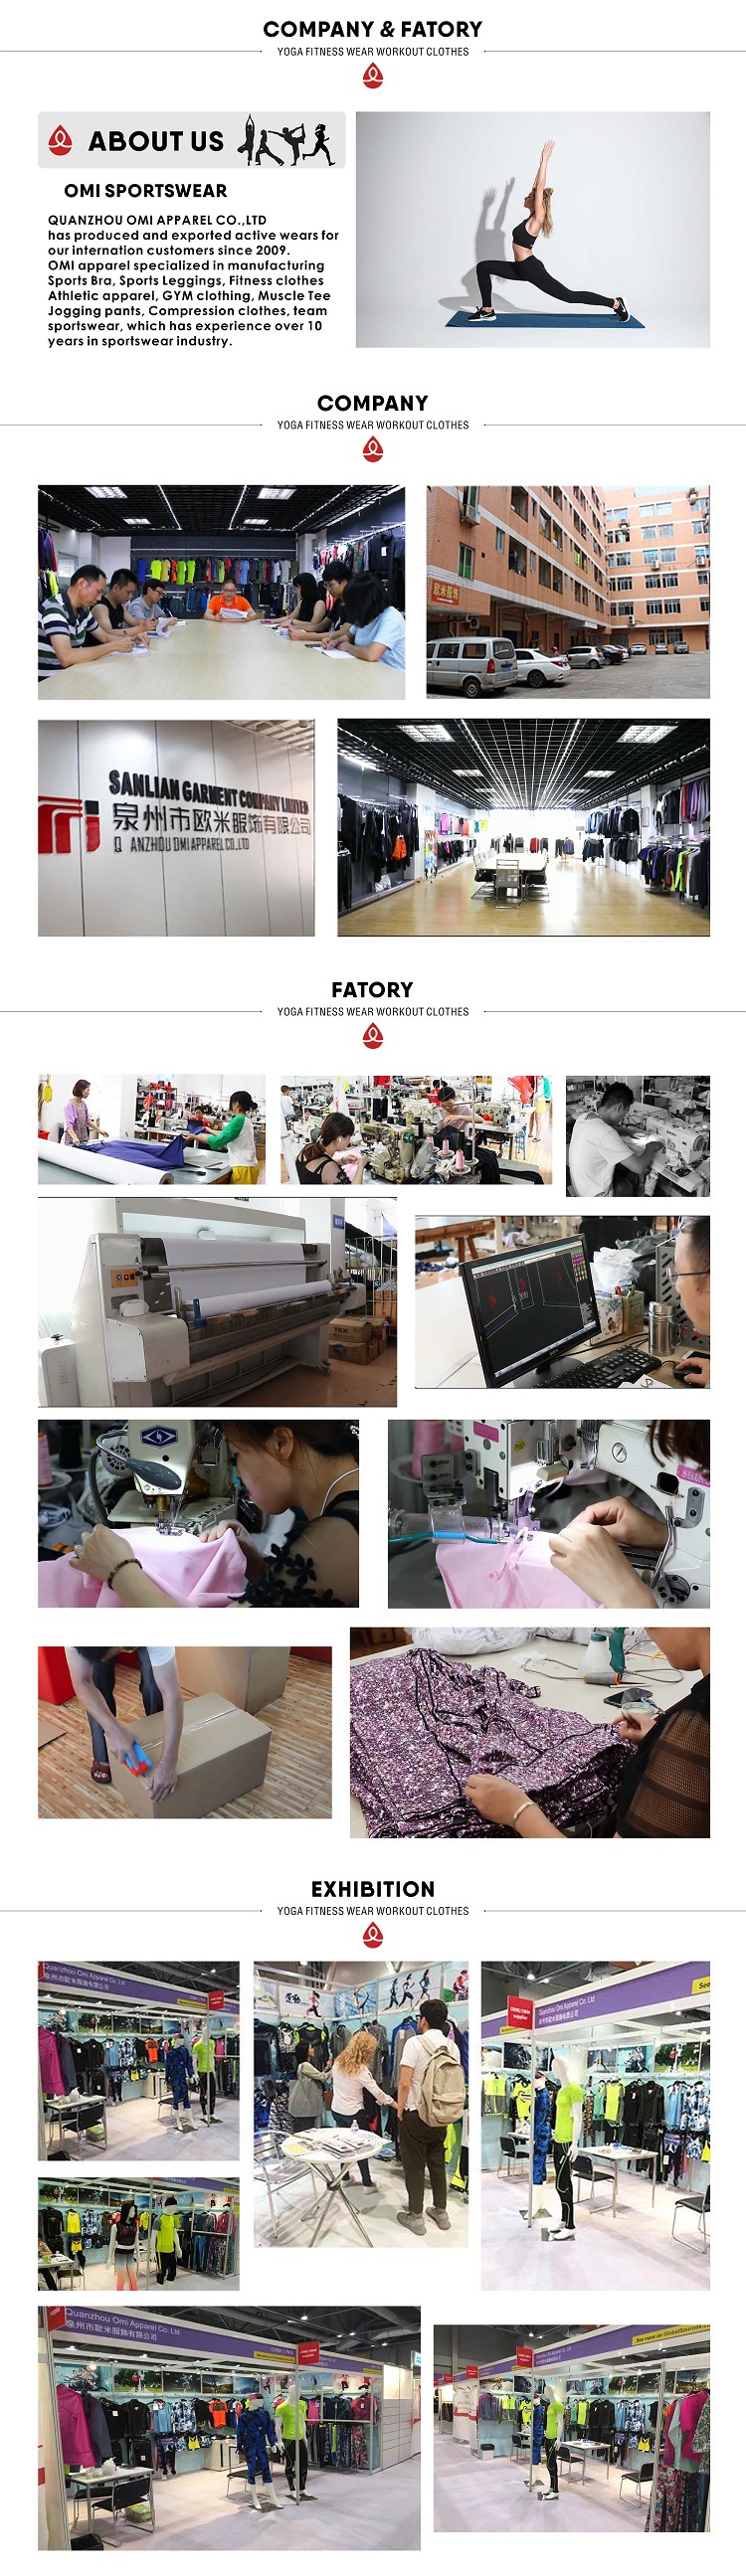 07-09 company factory